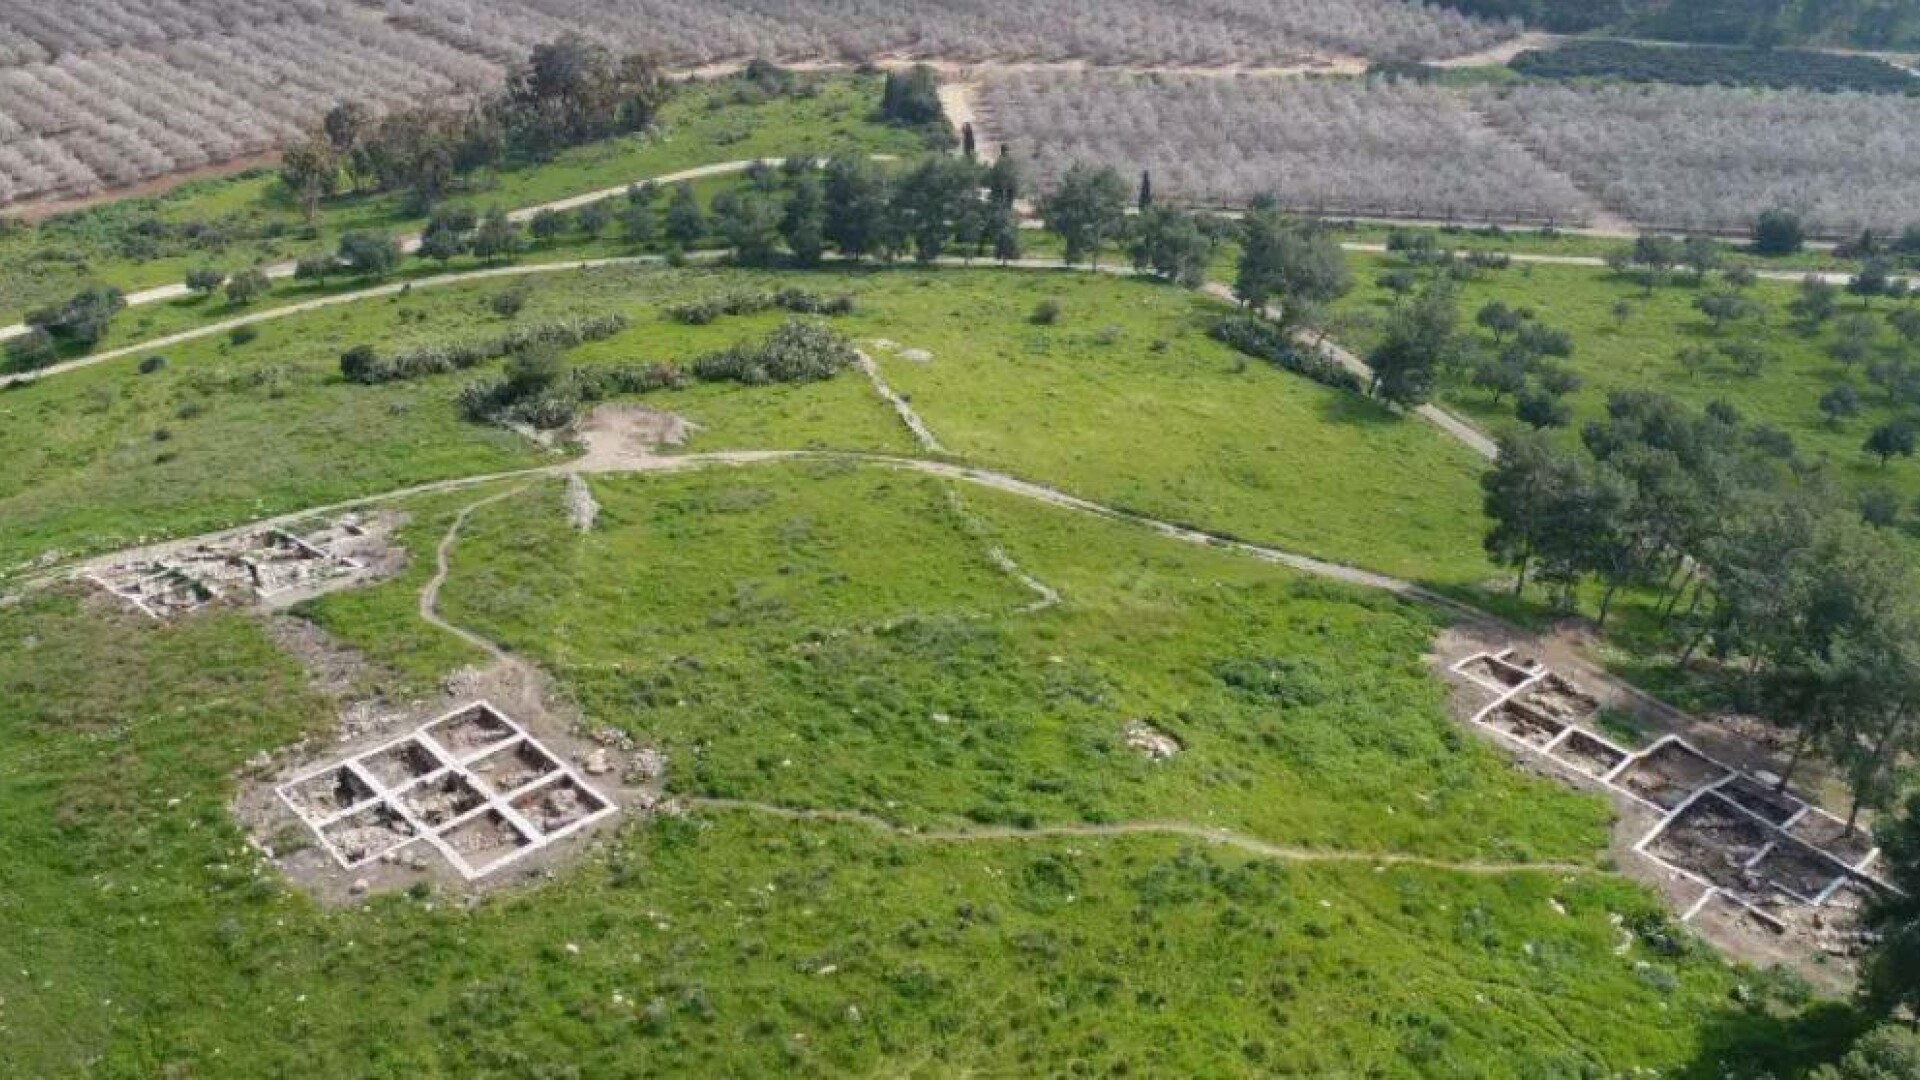 Oraș biblic, descoperit de arheologi în Israel